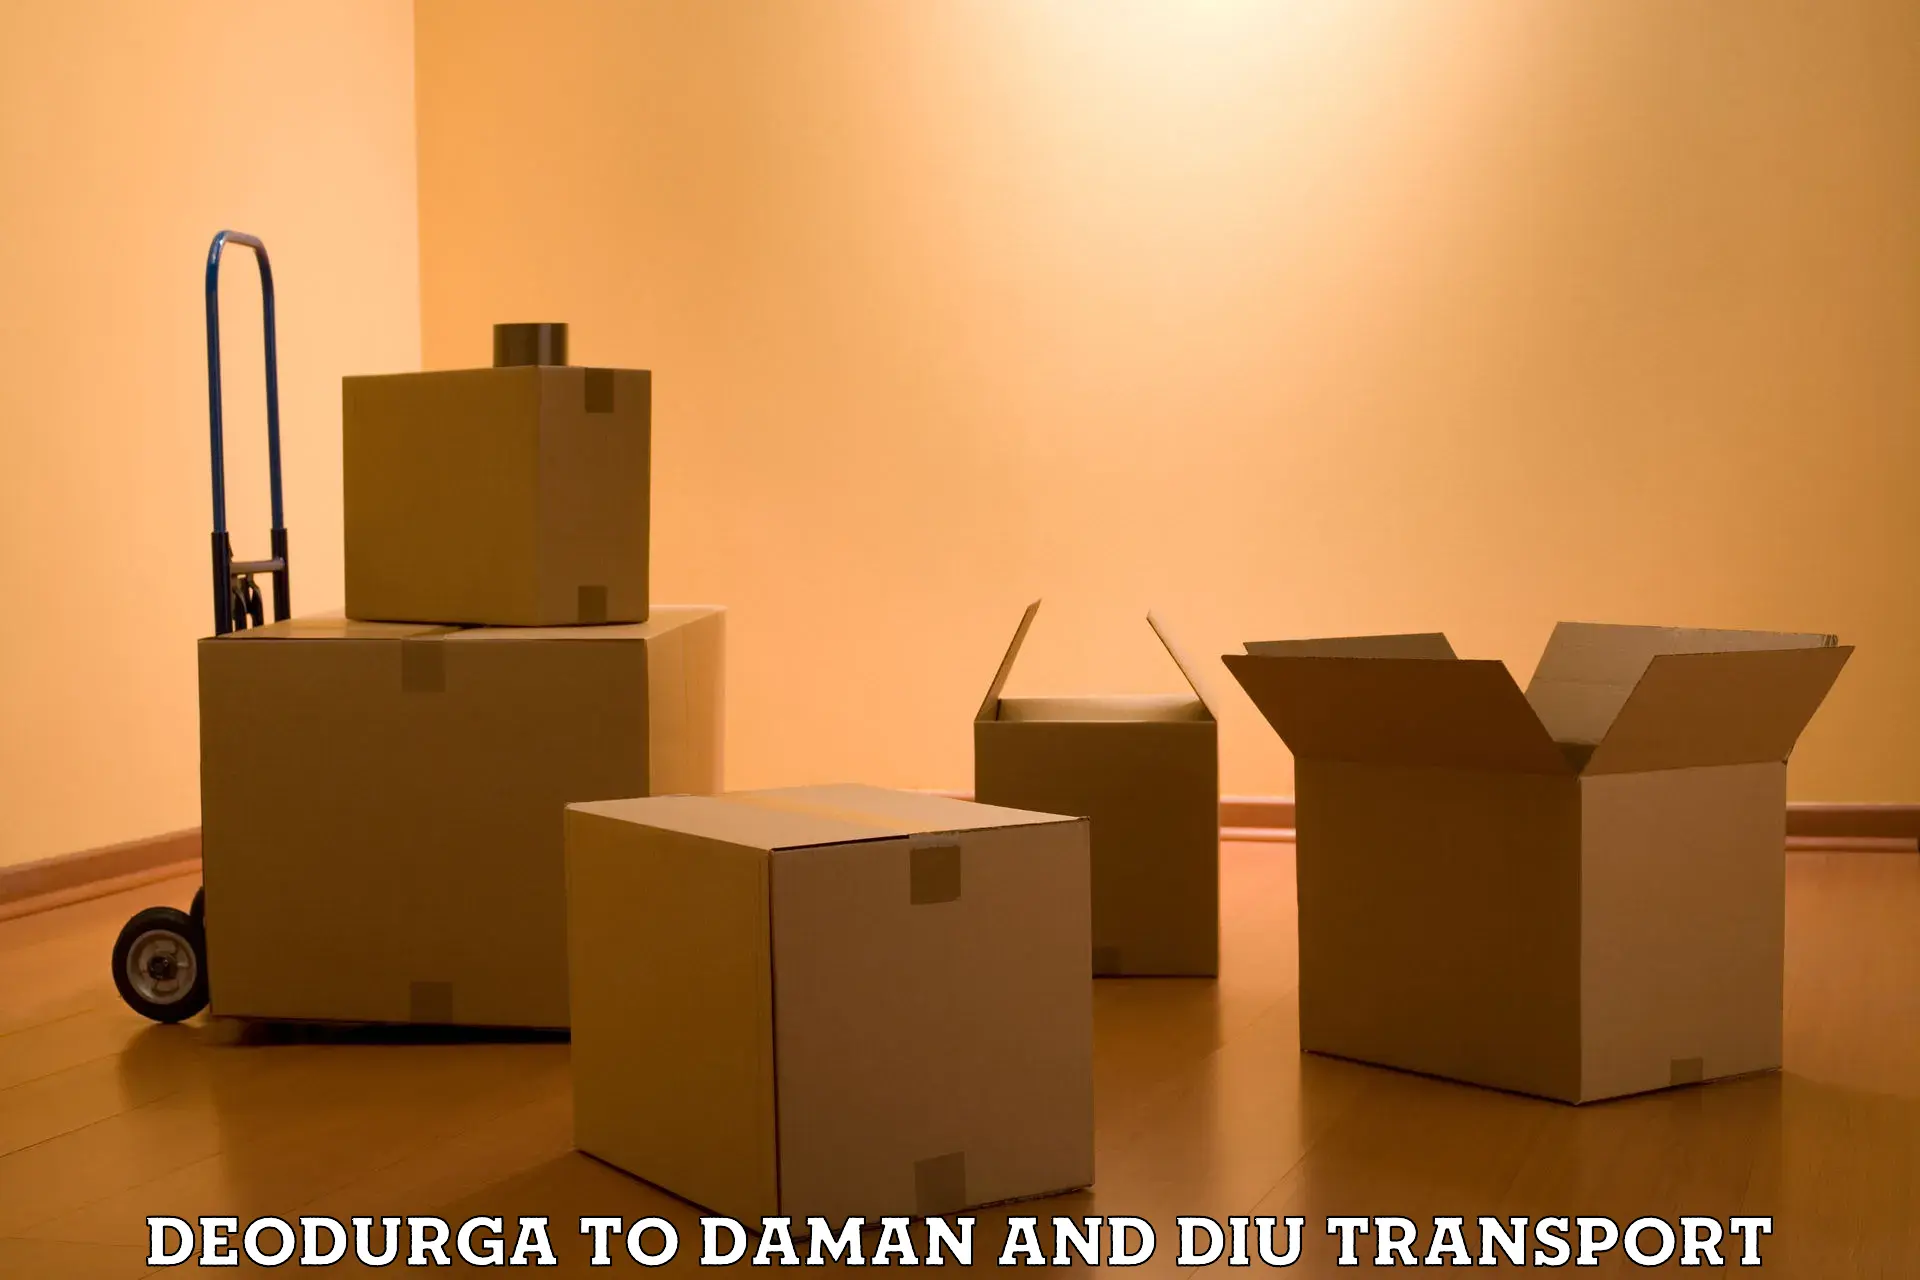 Vehicle transport services Deodurga to Daman and Diu